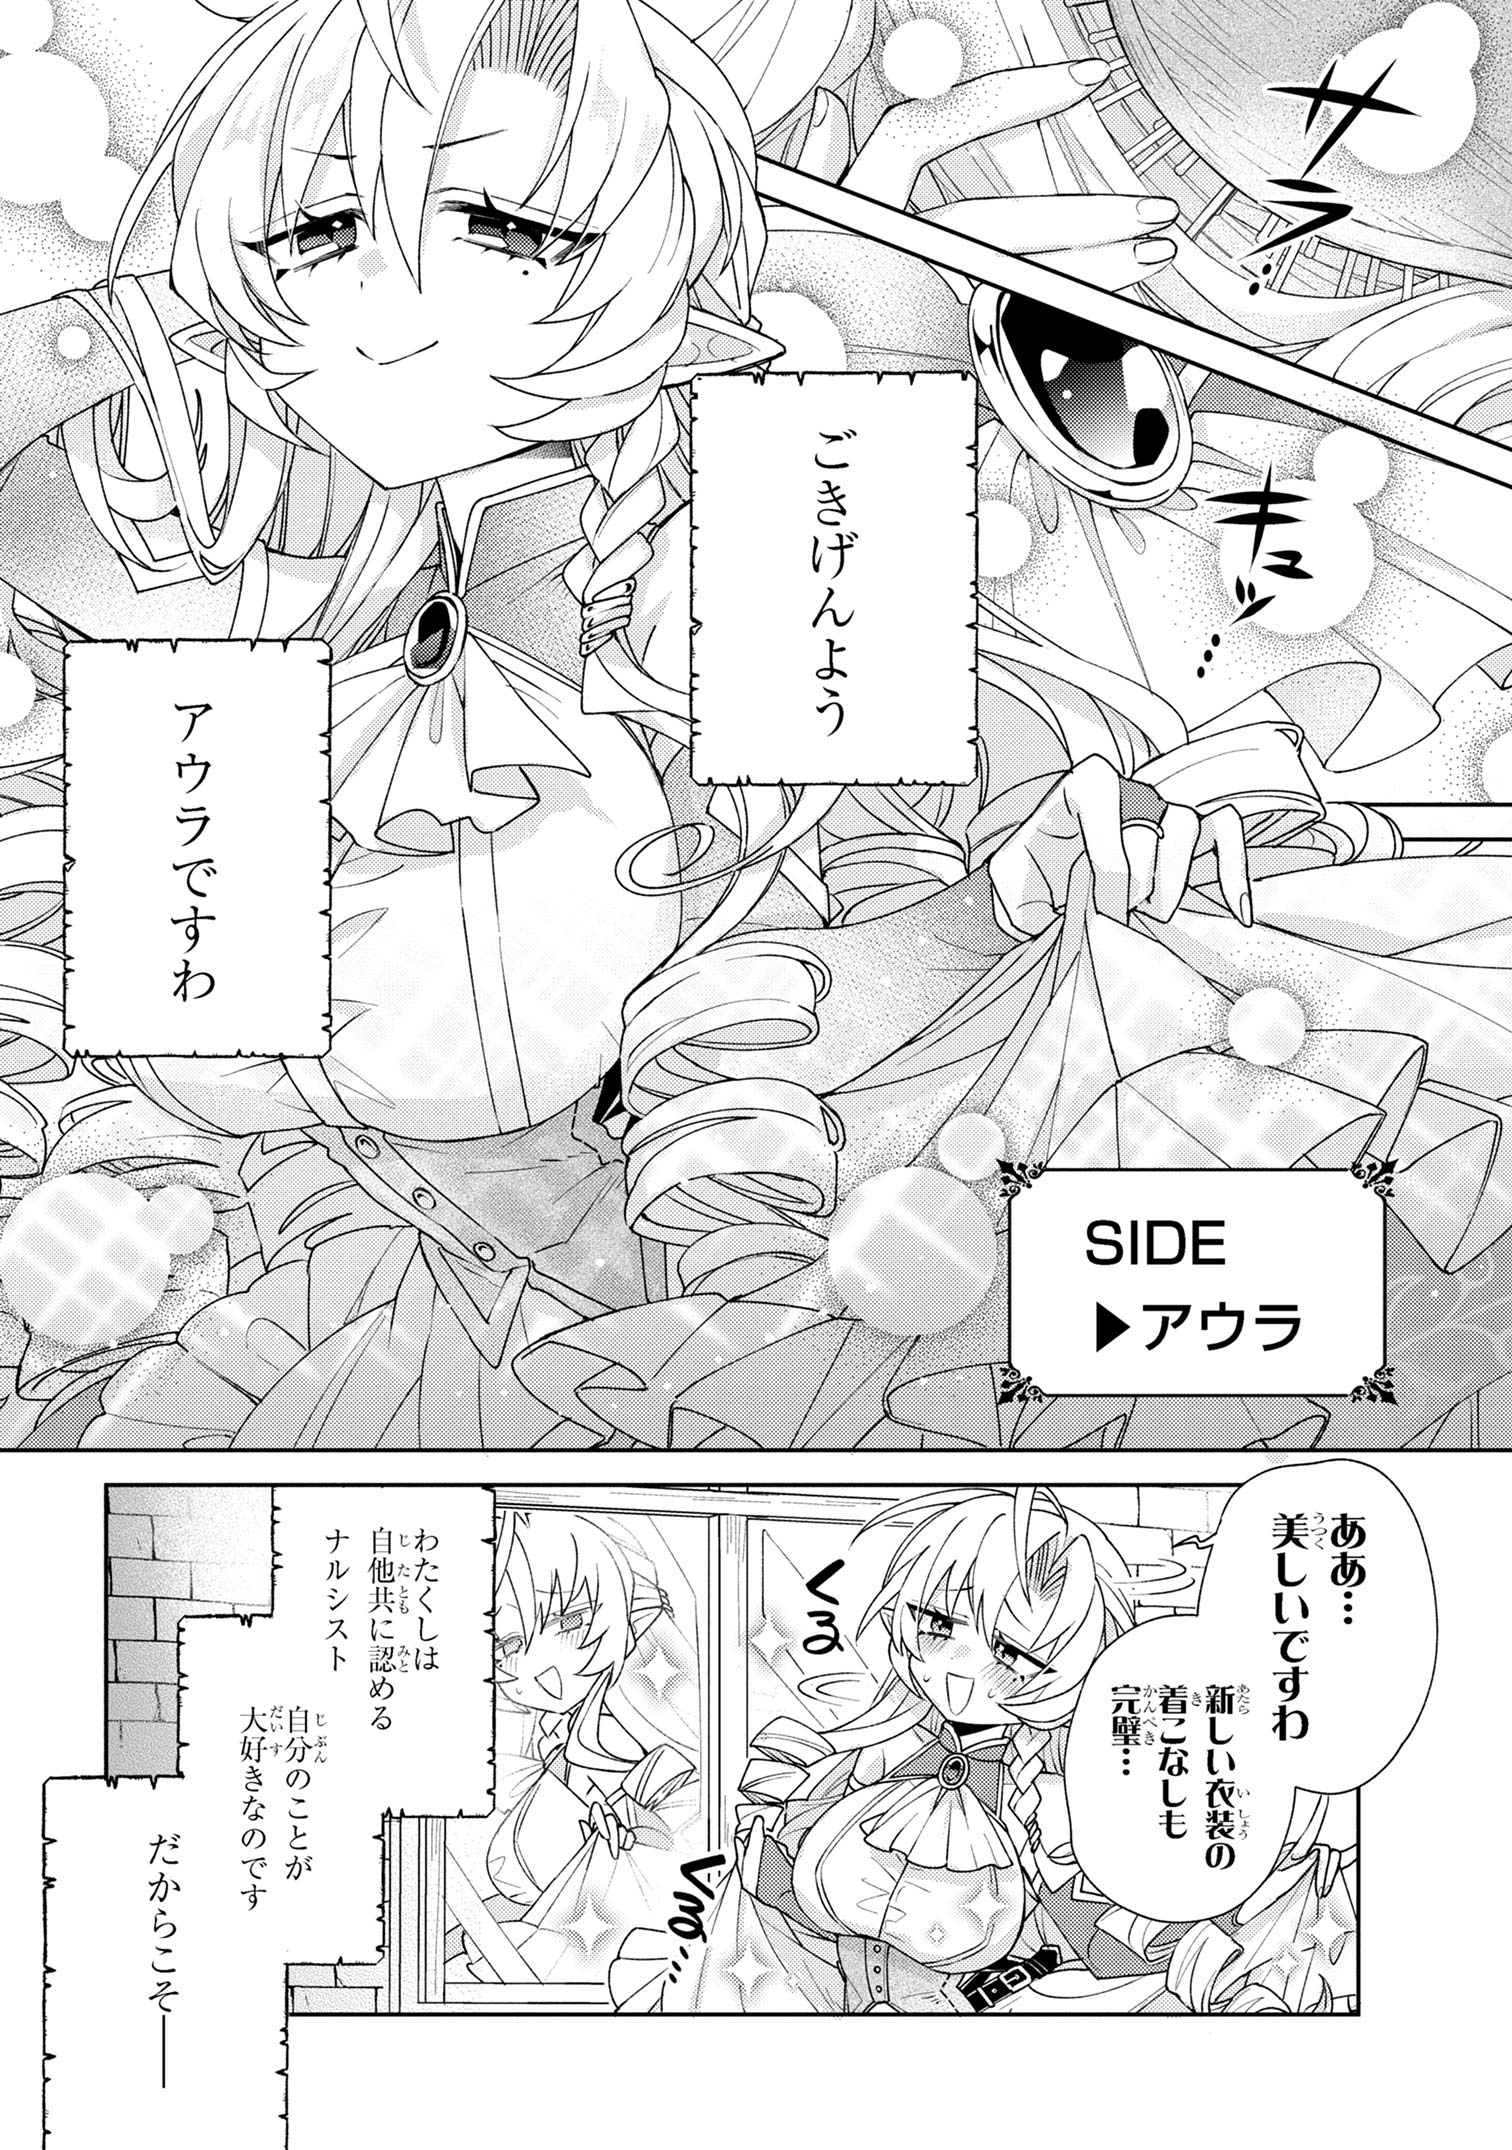 Dorei kara no Kitai to Hyouka no Sei de Sakushu Dekinai no da ga - Chapter 7 - Page 2